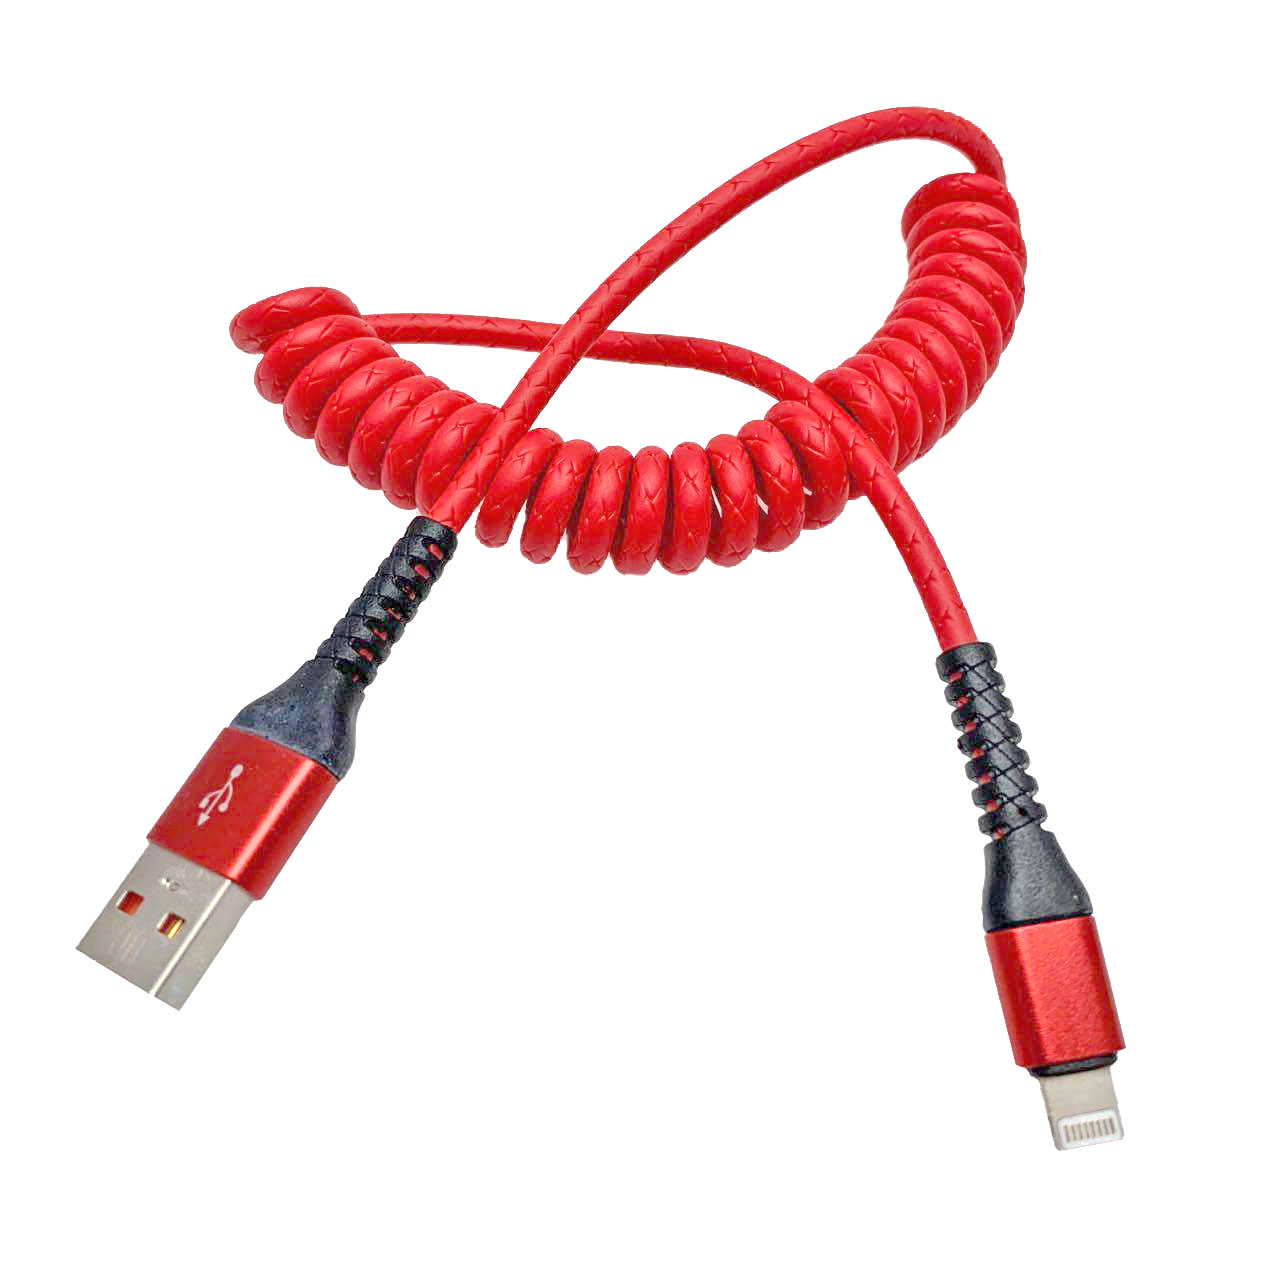 USB Дата-кабель "XB X13" APPLE USB Lightning 8-pin силиконовый 1 метр, витой, цвет красный, оранжевые контакты.